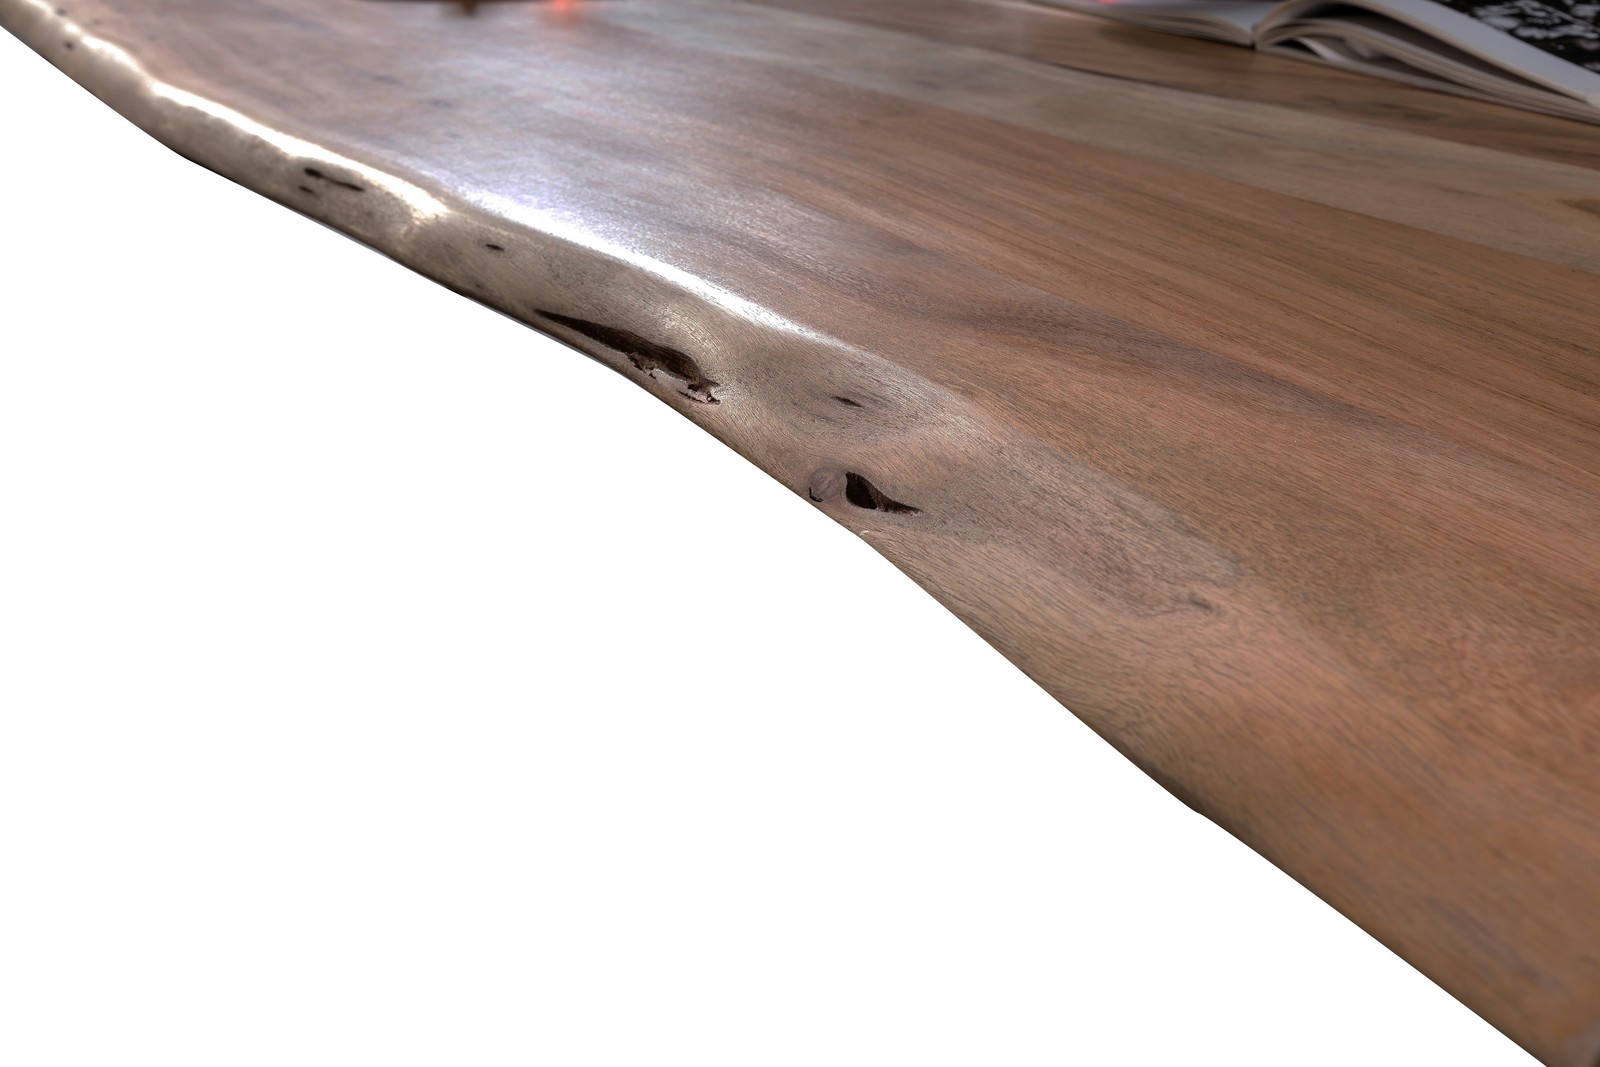 Baumkante-Esstisch TABLES & CO 180 x 90 cm Akazie nussfarben